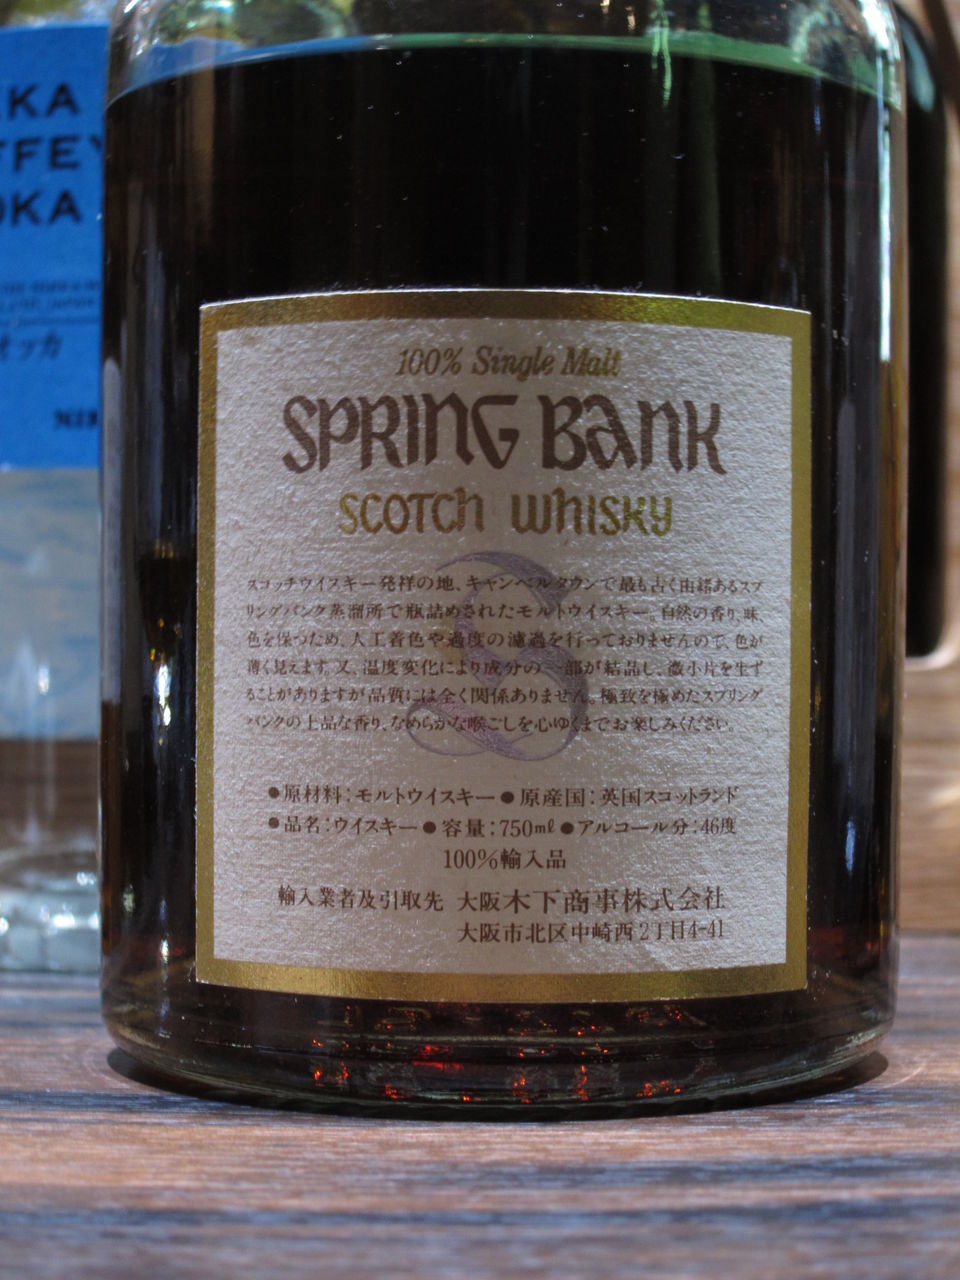 スプリングバンク 15年 1990年代流通 46% : くりりんのウイスキー置場